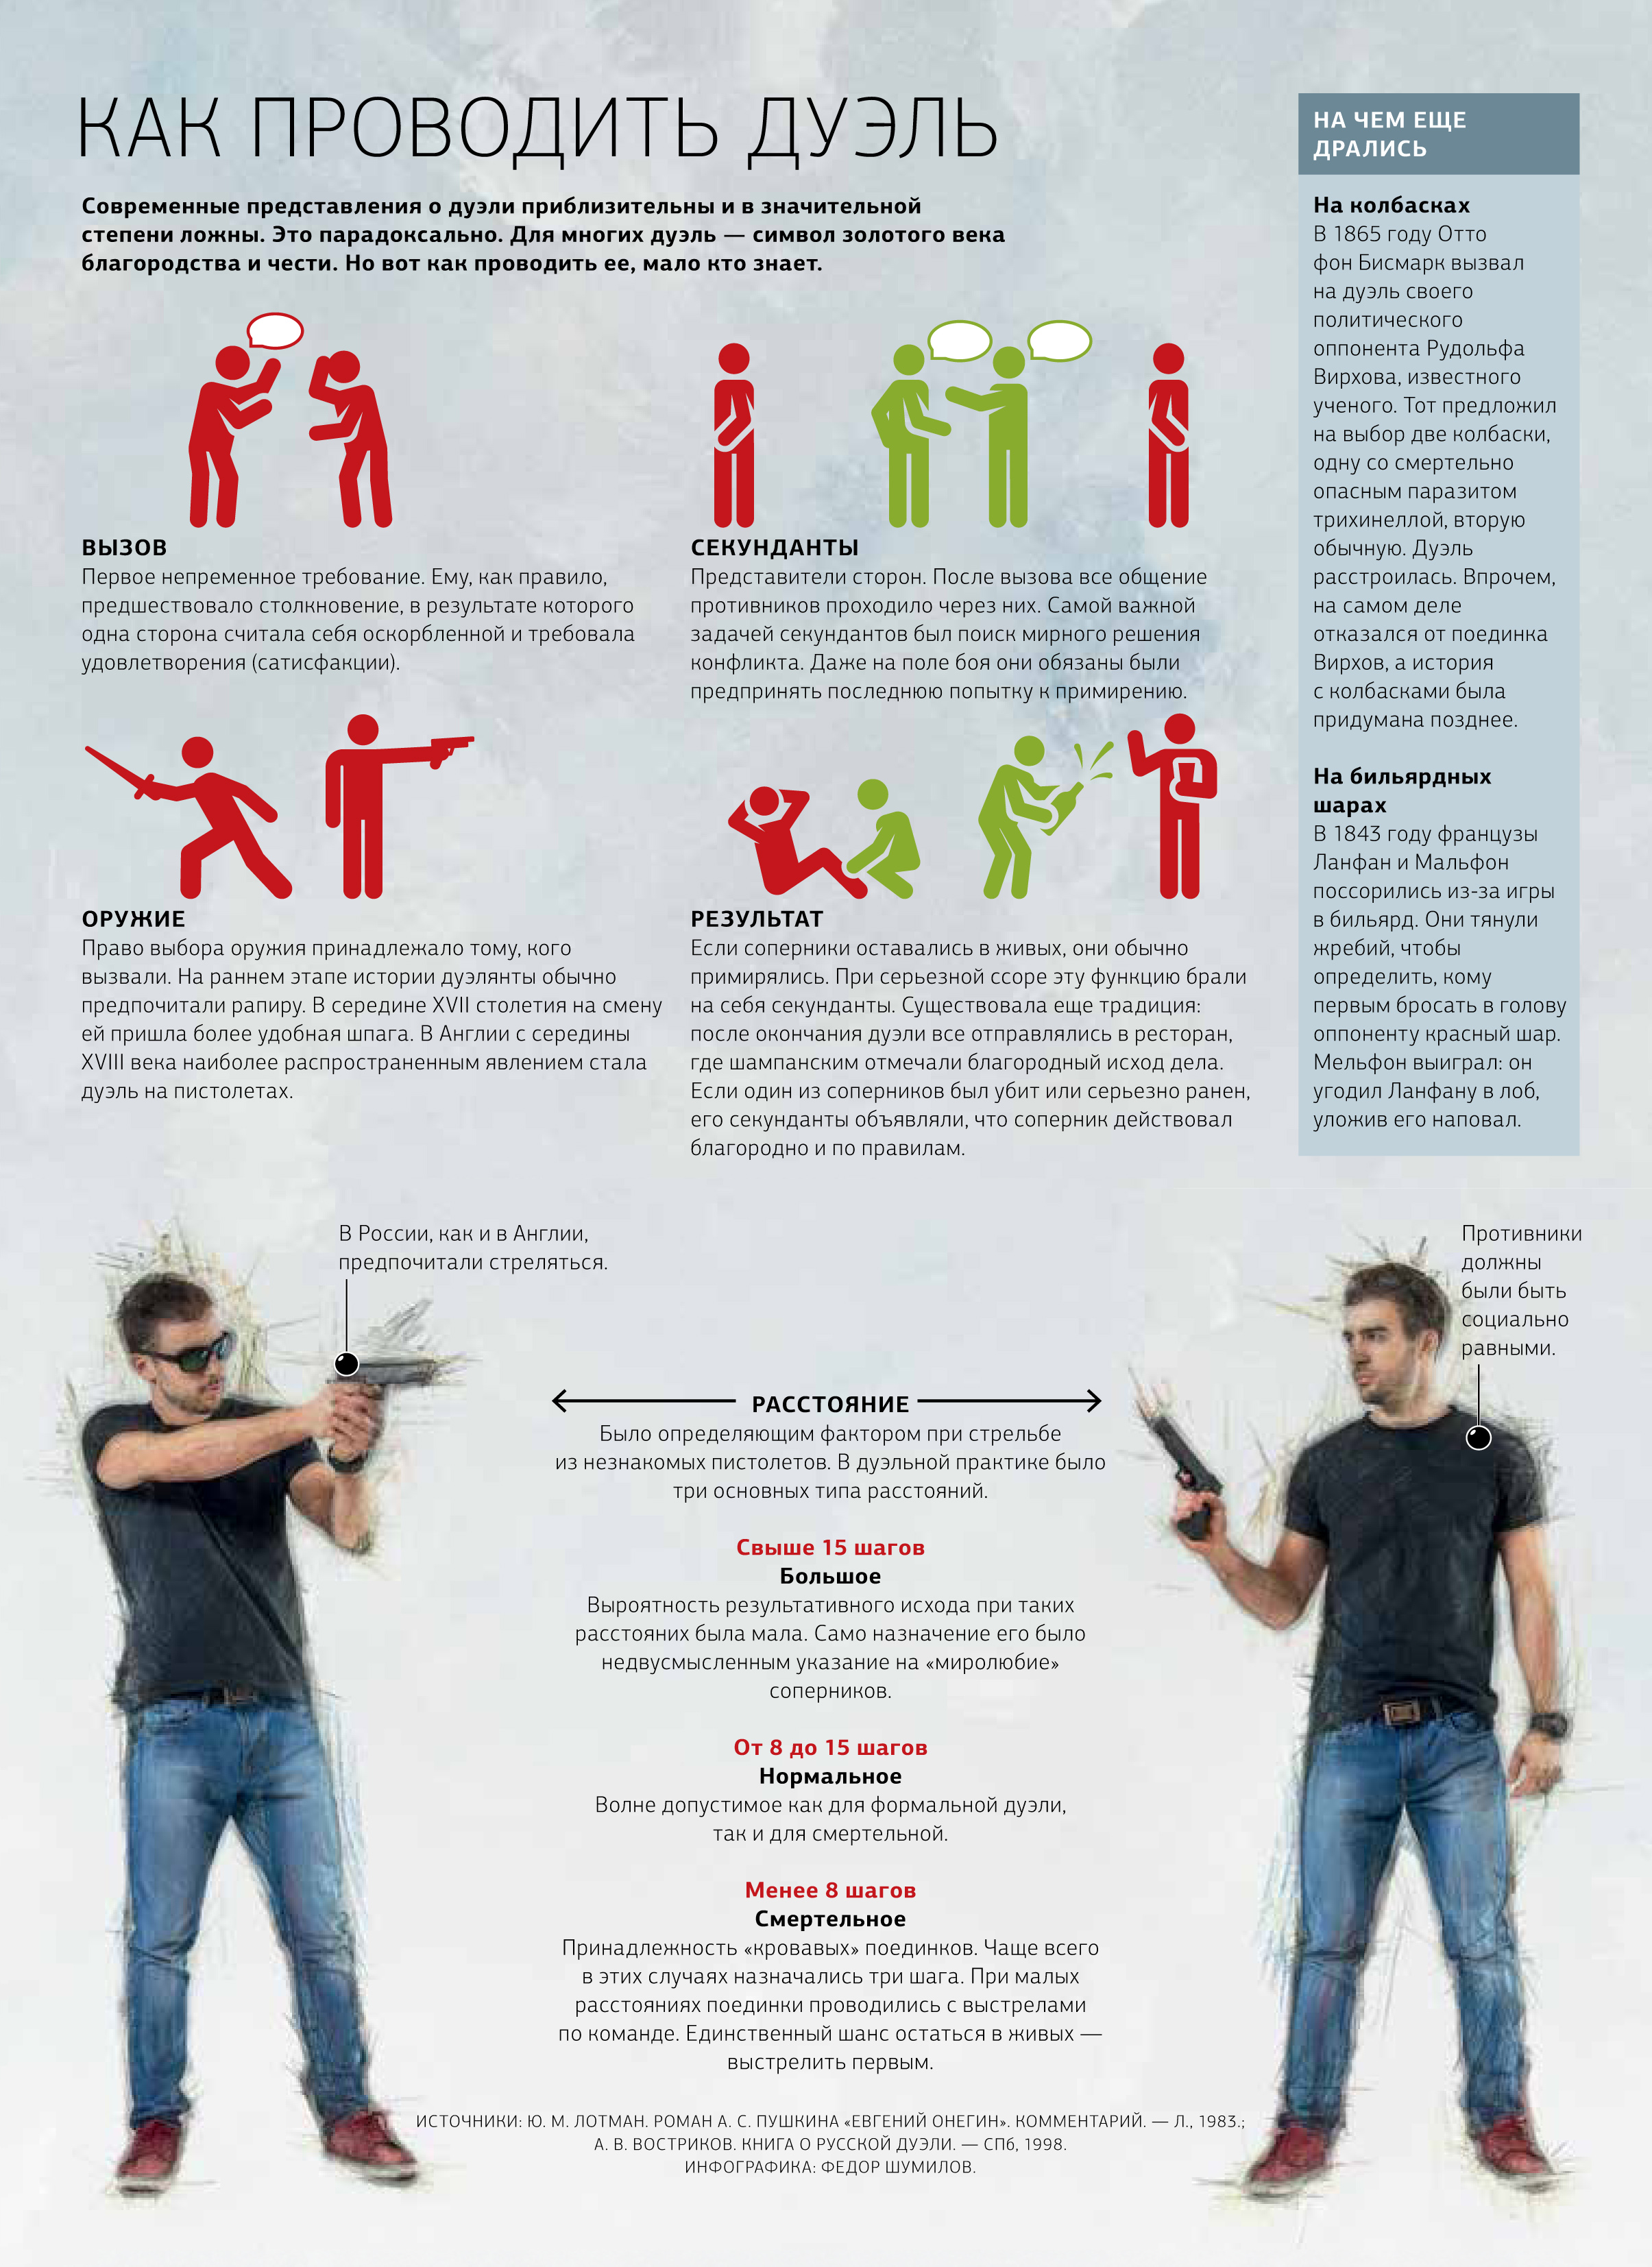 Порядок дуэли. Инфографика дуэль. Правила проведения дуэли. Дуэль на пистолетах. Выбор оружия на дуэли.